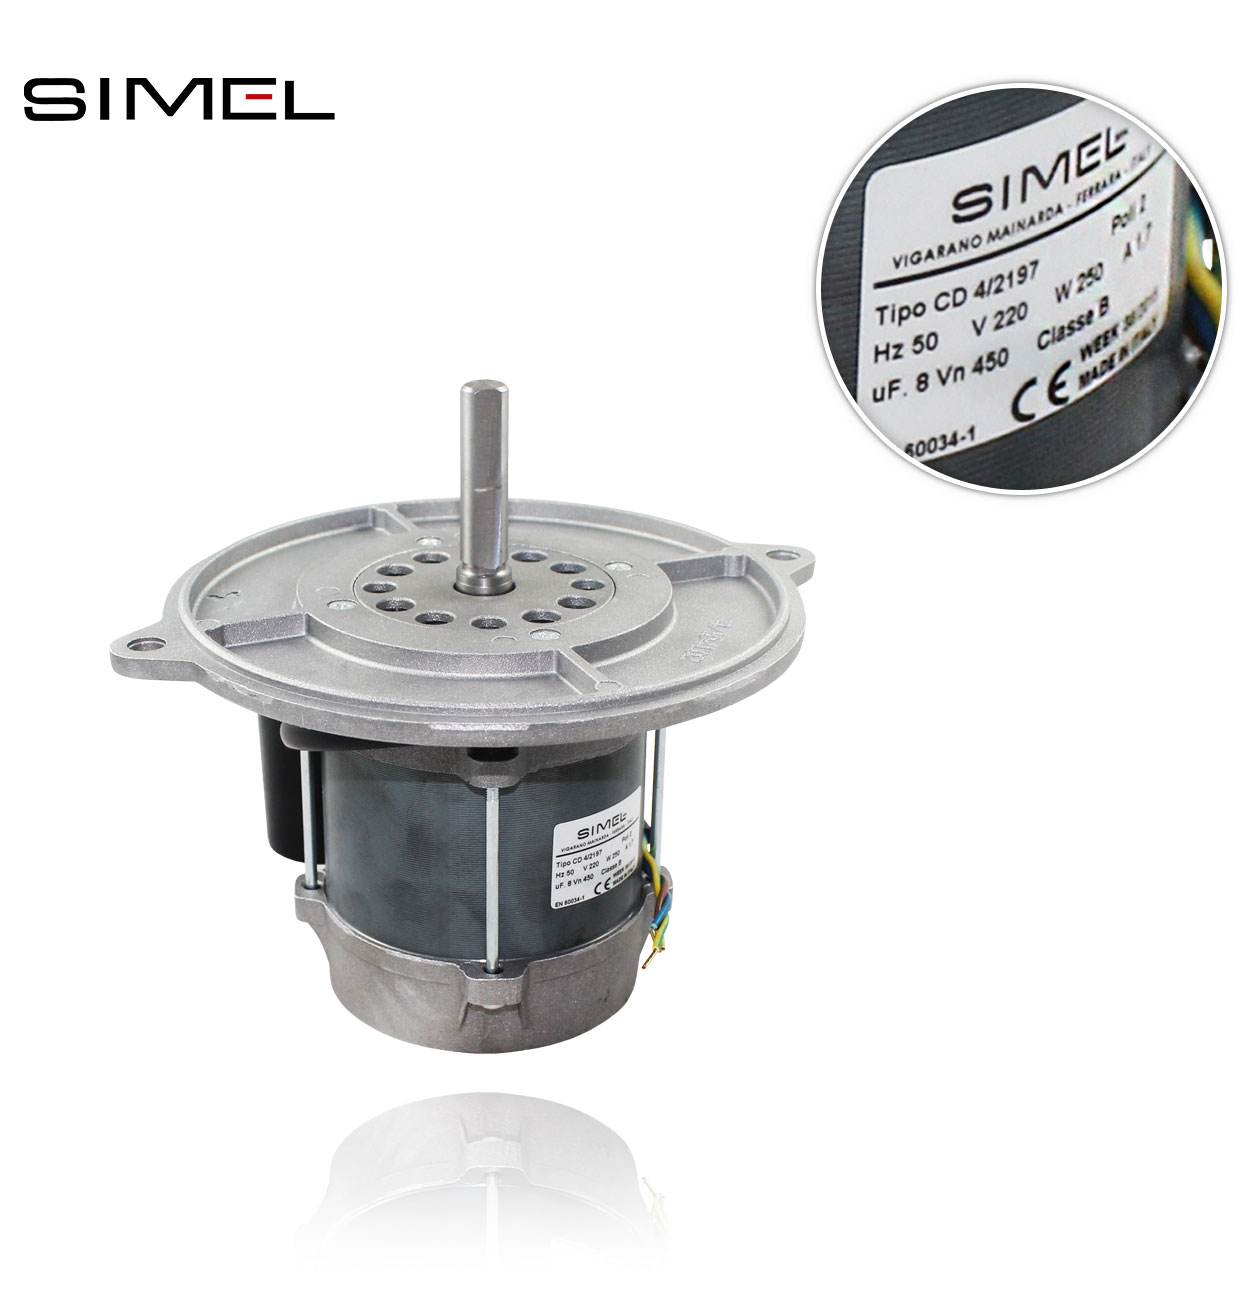 SIMEL MOT-2197 CD/4-2197  220V/50Hz  250W MOTOR